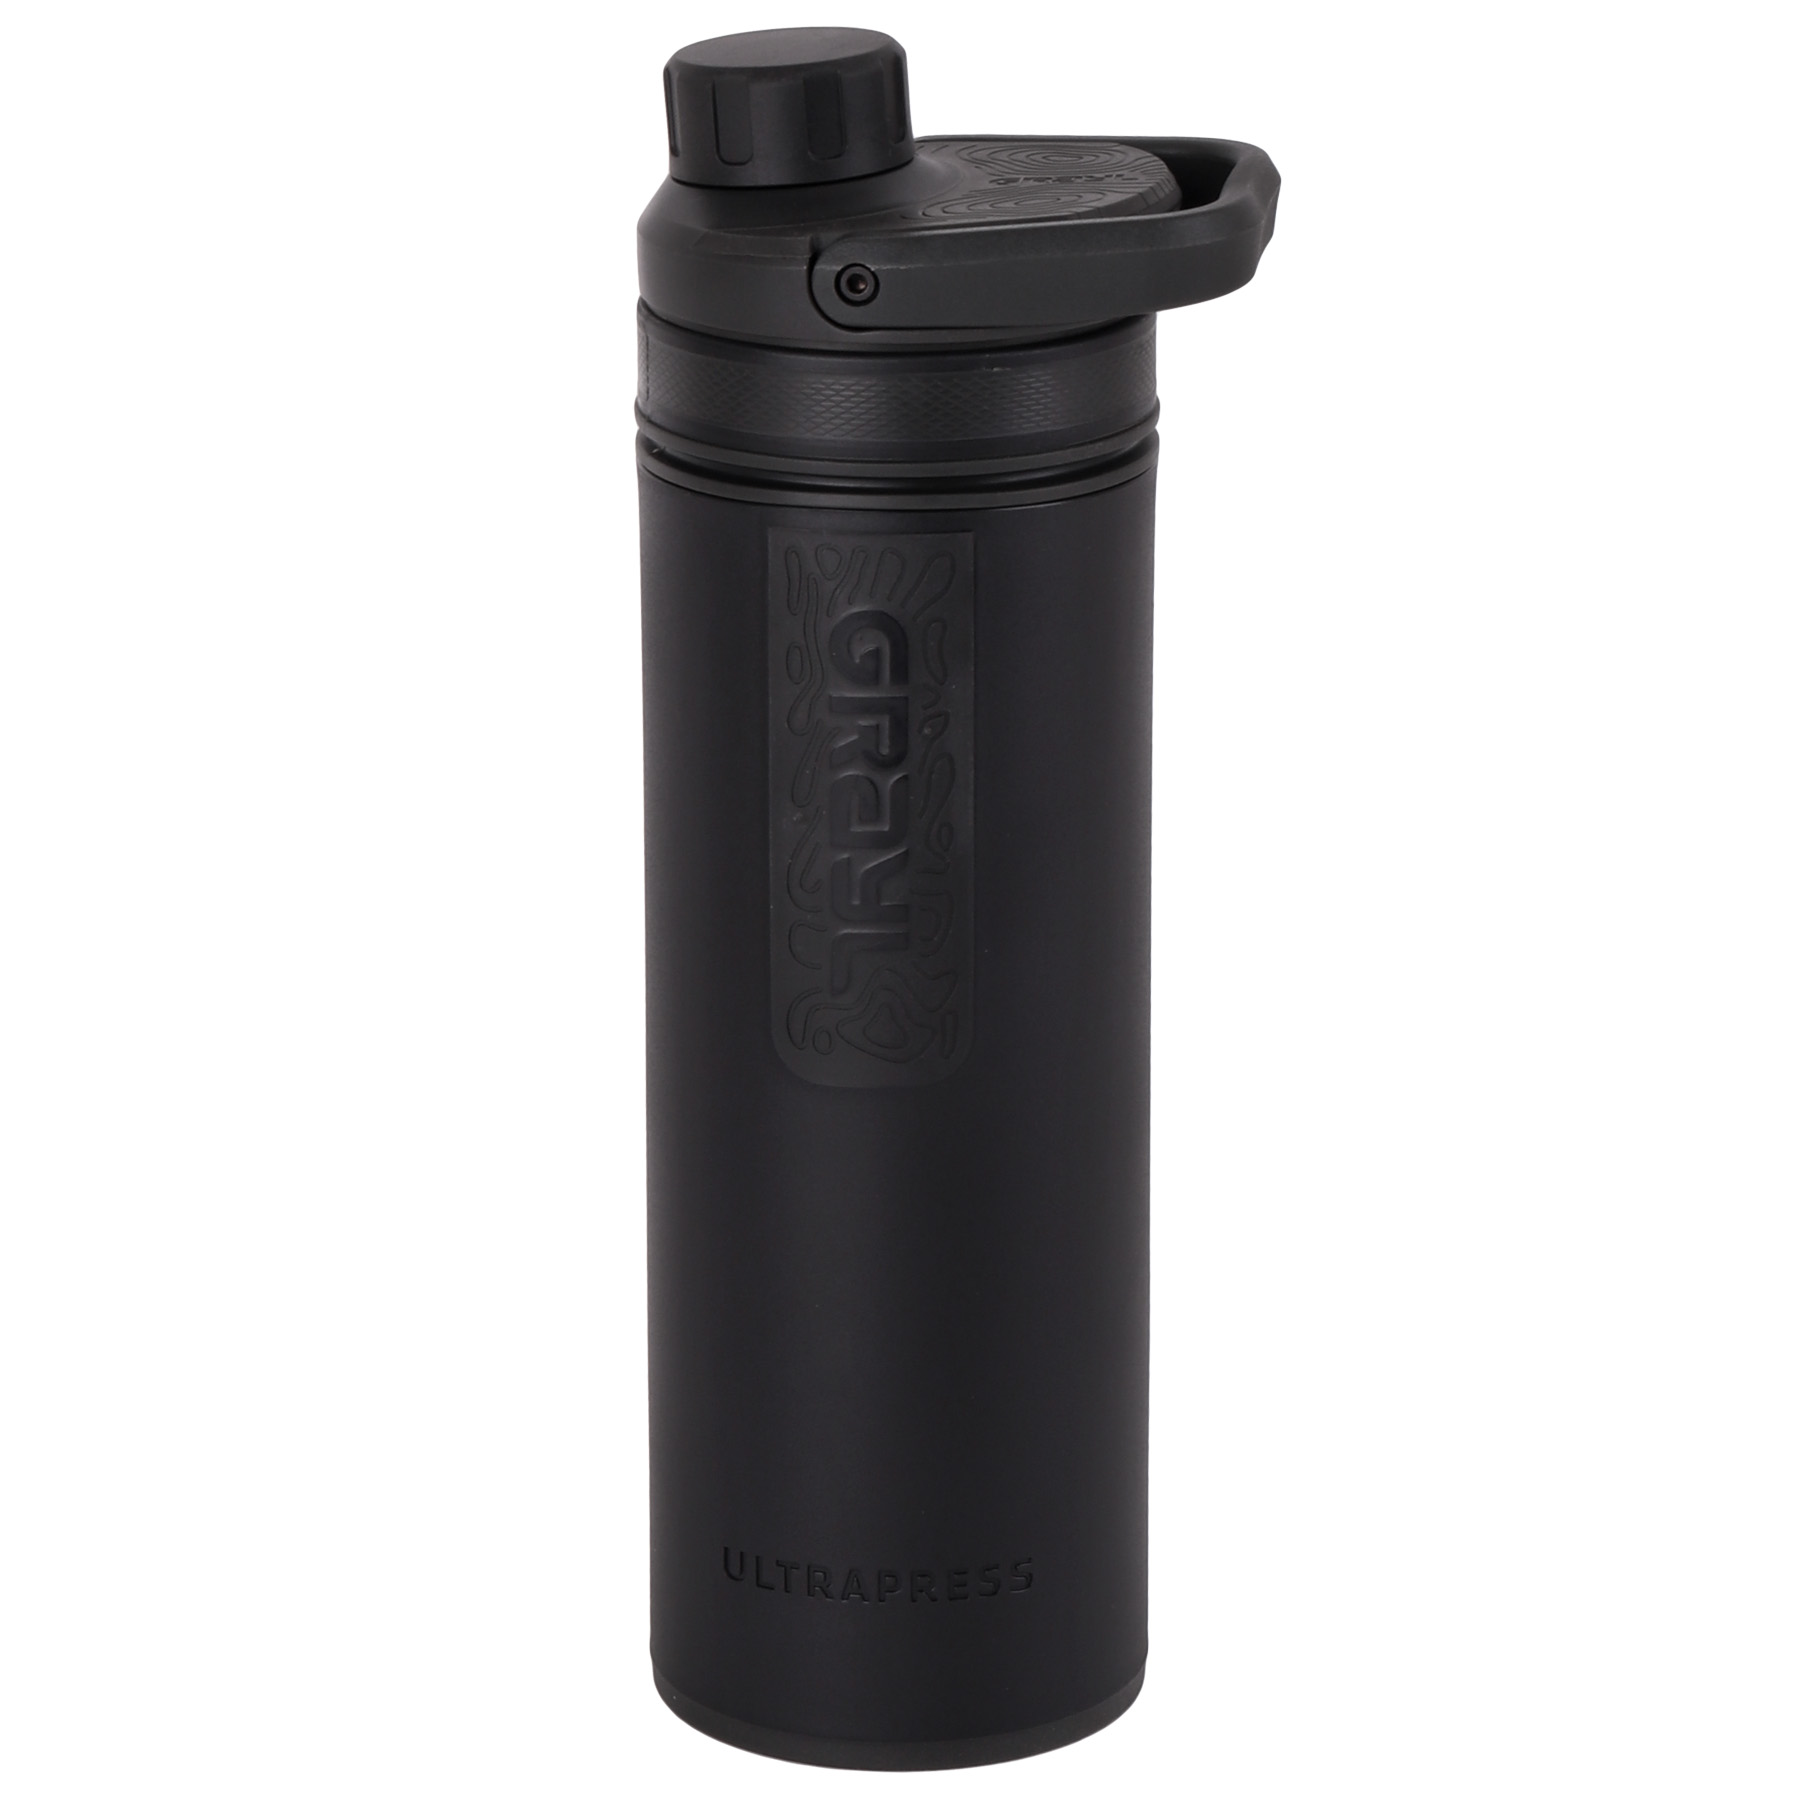 Produktbild von Grayl UltraPress Purifier Trinkflasche mit Wasserfilter - 500ml - Covert Black